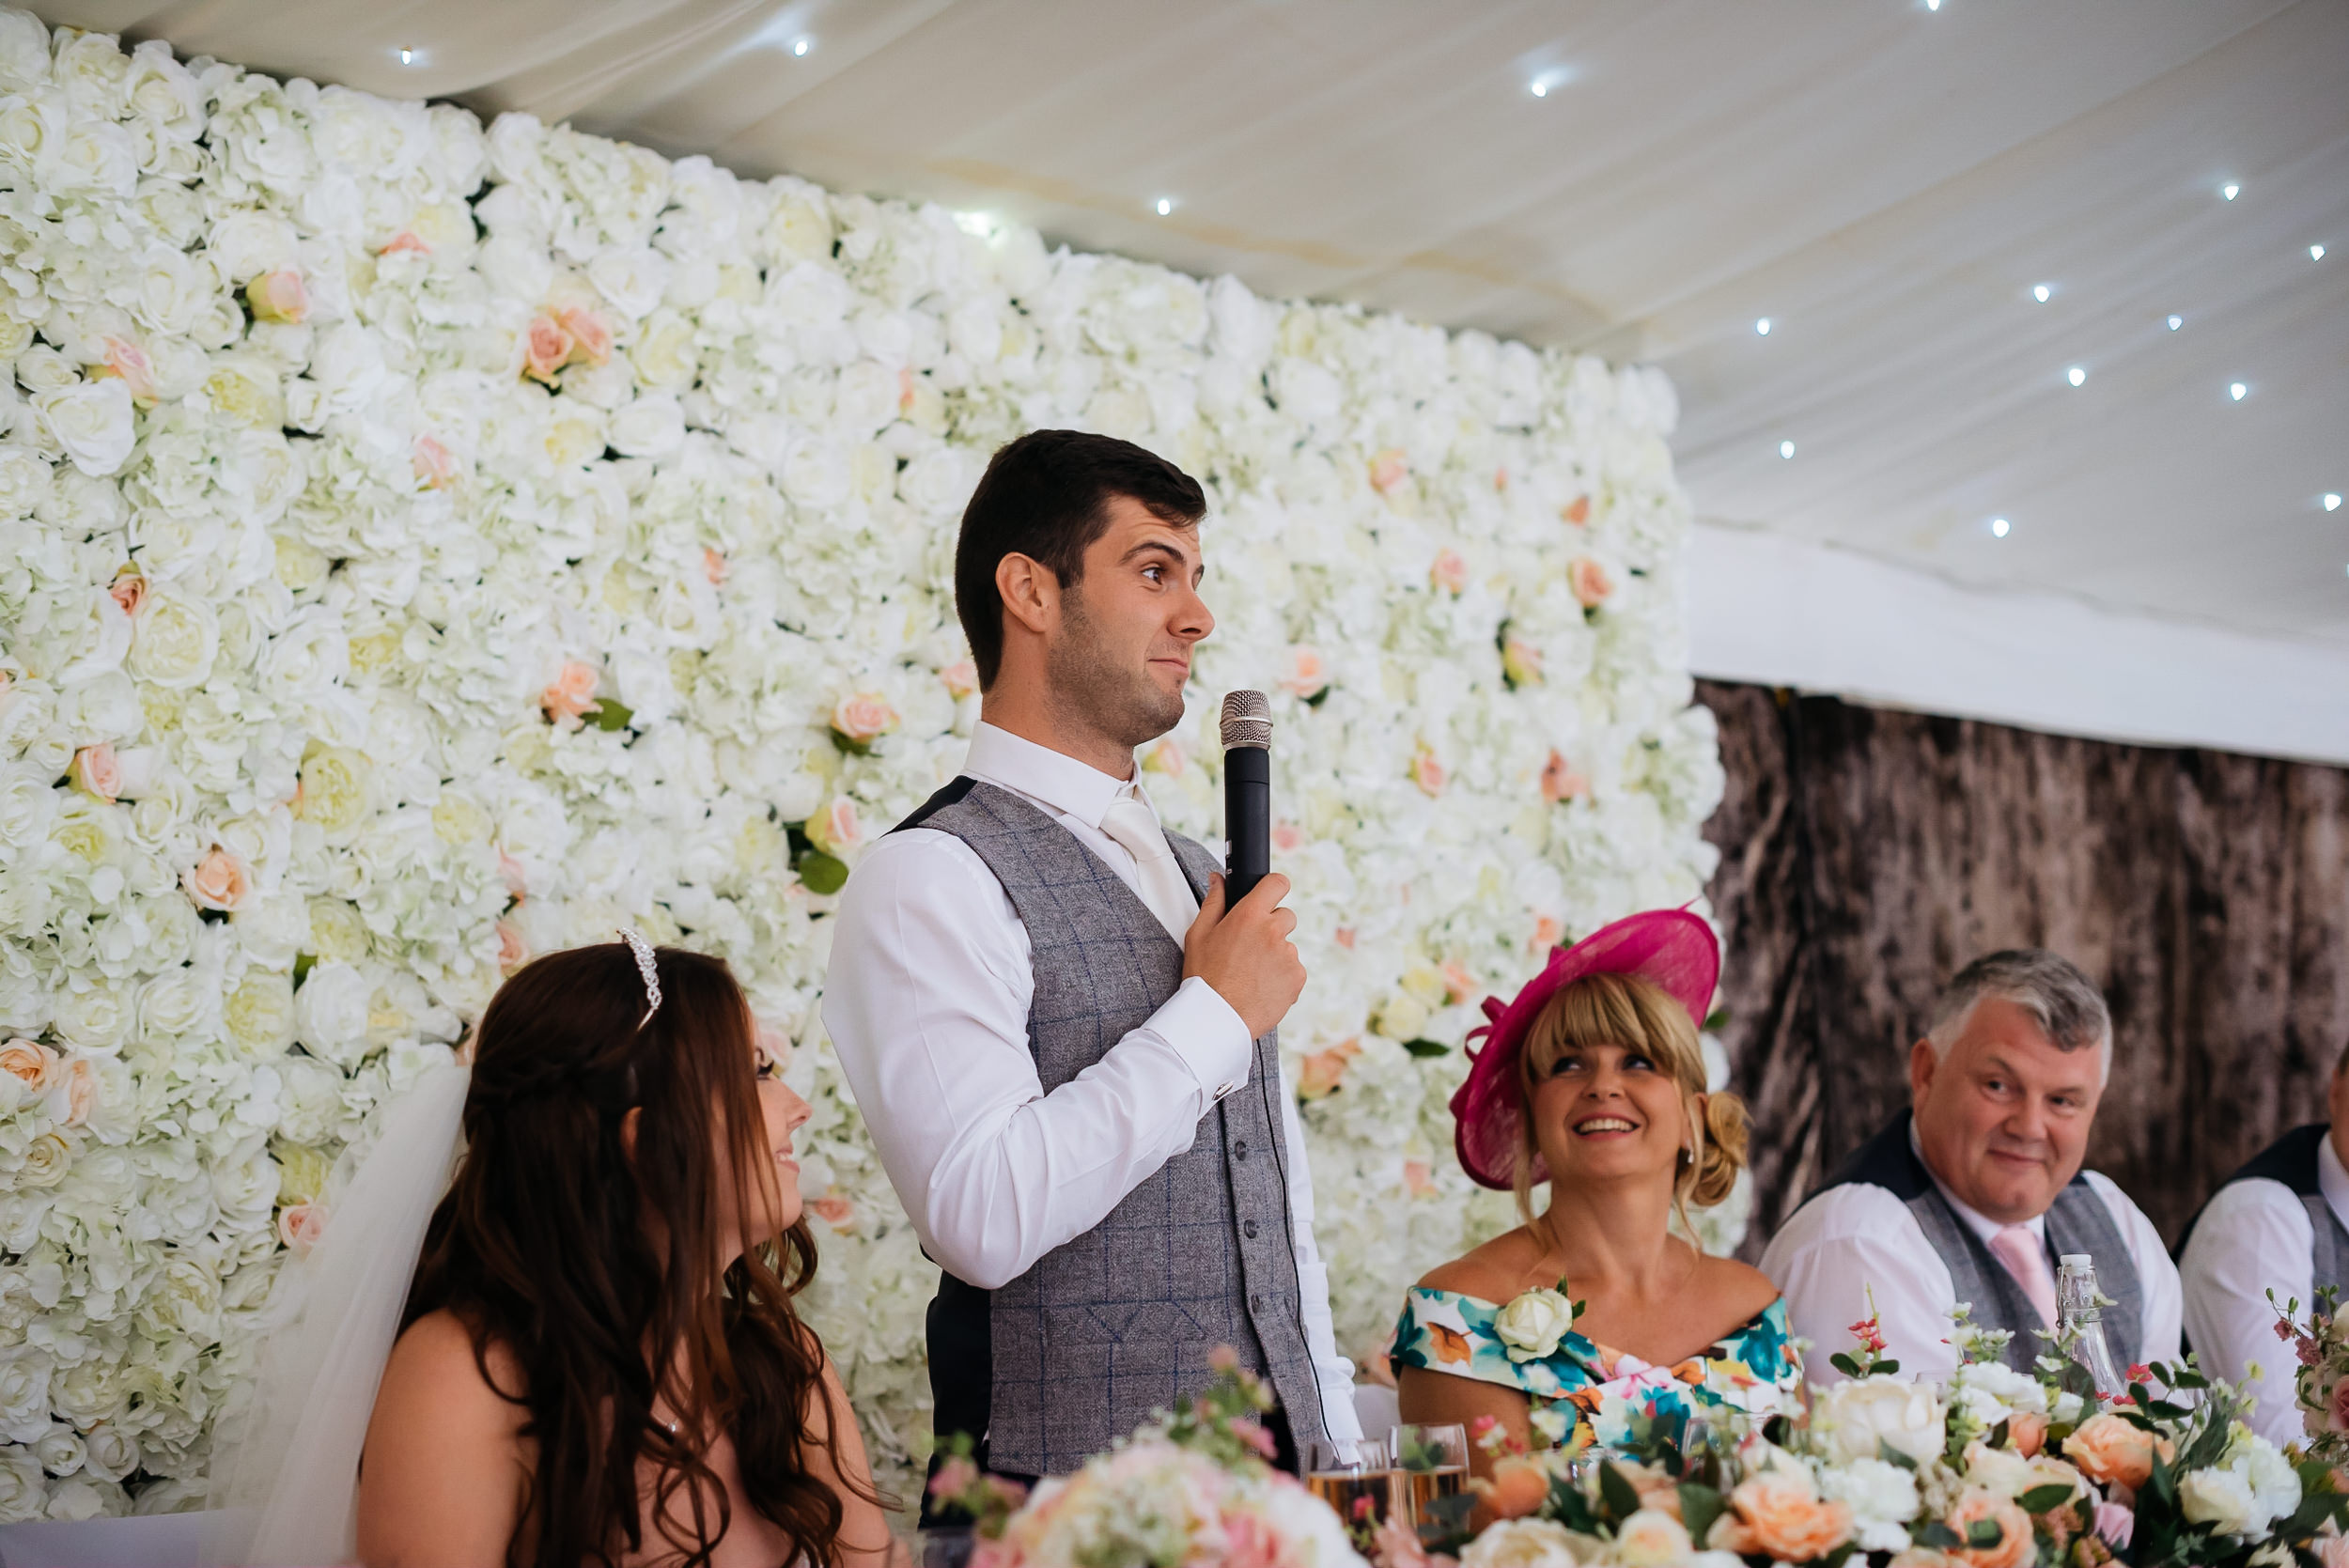 speech by the groom